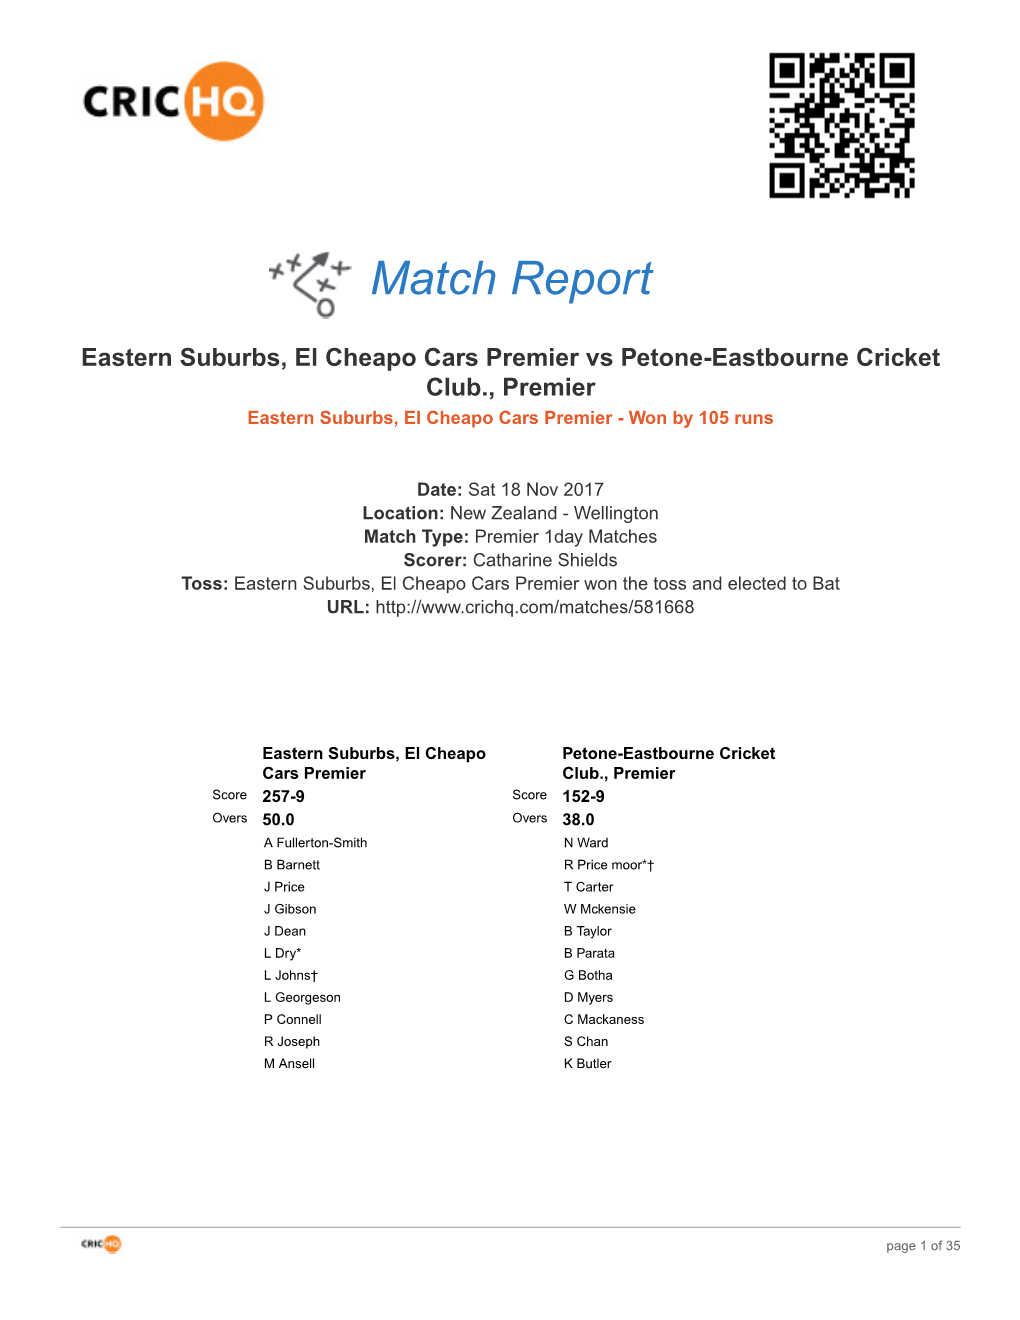 Crichq Match Report